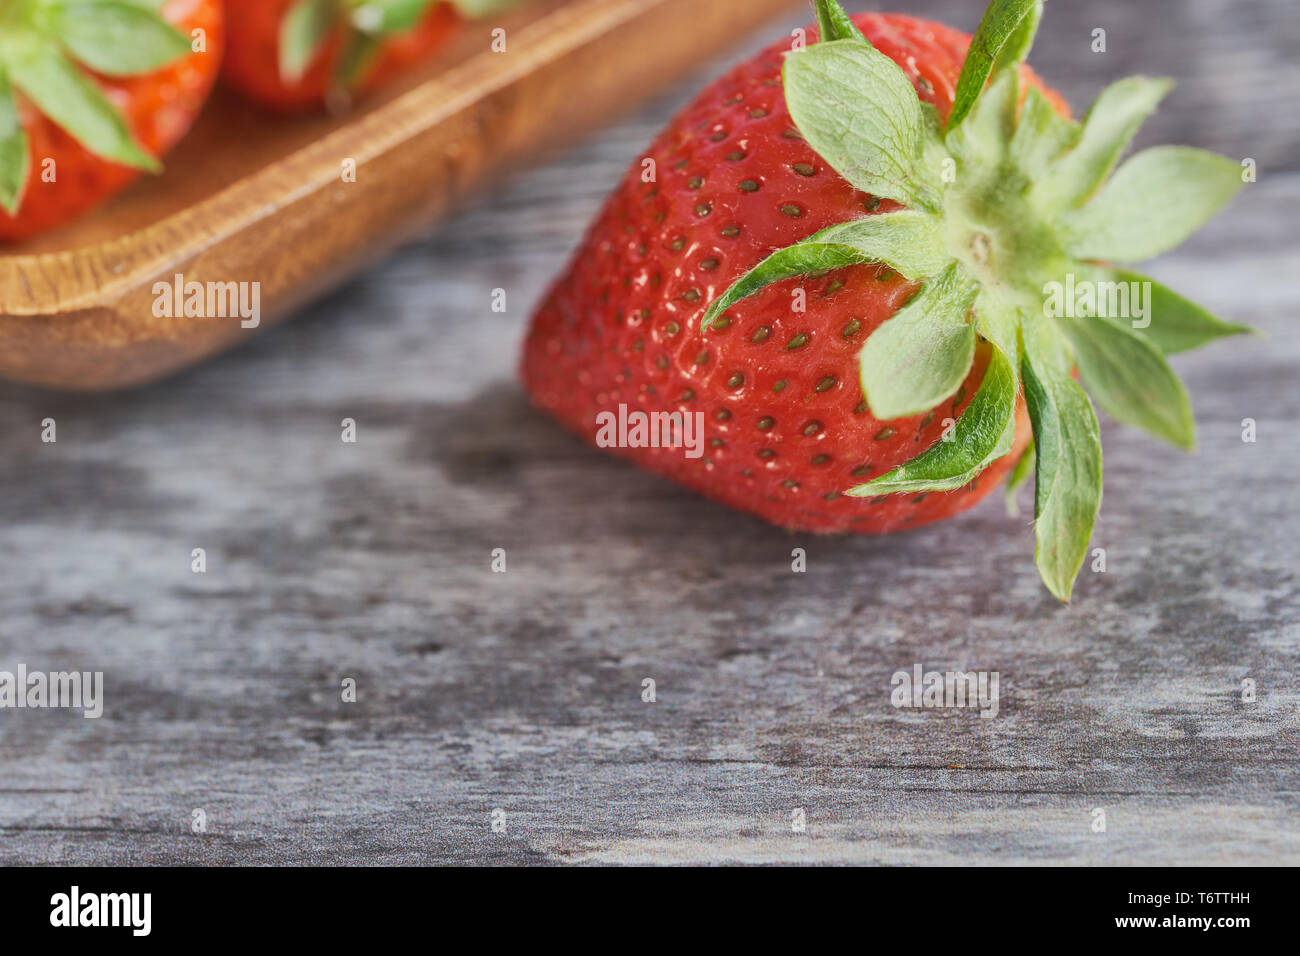 Couleur macro photo d'une seule fraise sur la surface en bois, de plus en plus floue dans l'arrière-plan est un bol en bois avec des fraises Banque D'Images